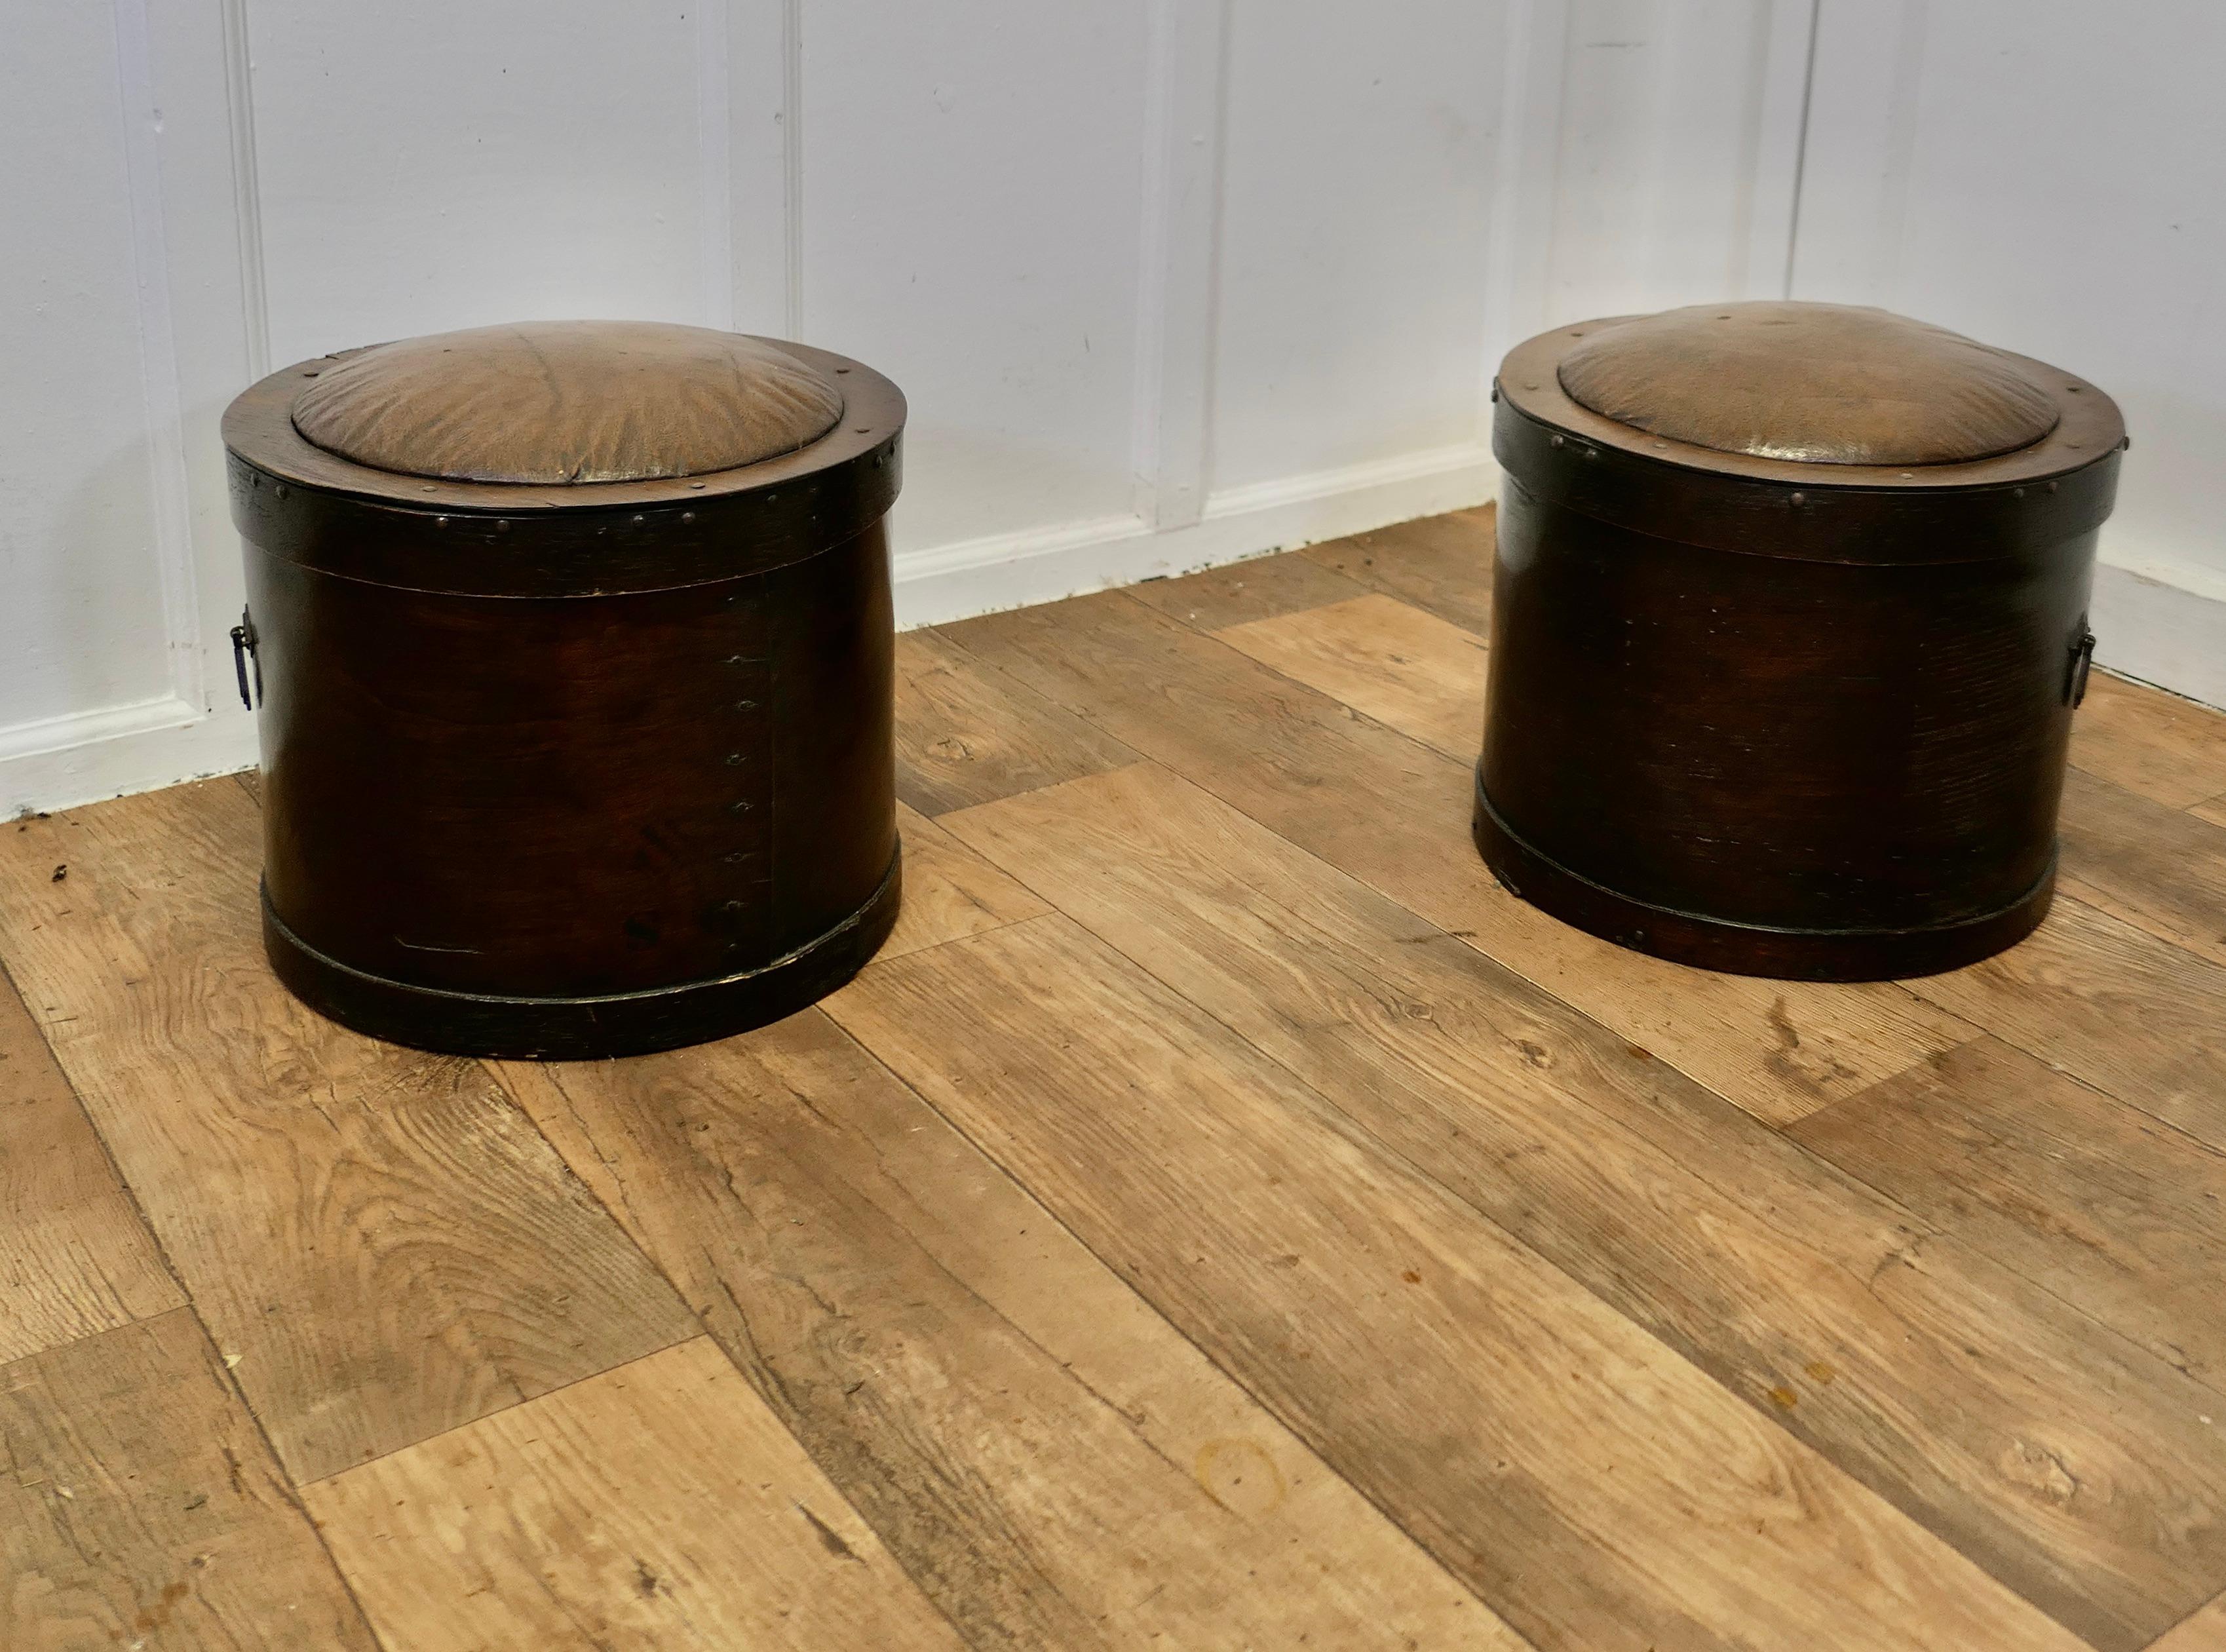 Ein Paar Kaminhocker aus den 1920er Jahren für Kohle und Holzscheite

Ein attraktives Paar runder Bugholzhocker, die mit Rexine bezogen sind (ein Öltuchmaterial, das wie Leder aussieht)

Die Sitze haben gepolsterte, abnehmbare Deckel, die sich ideal